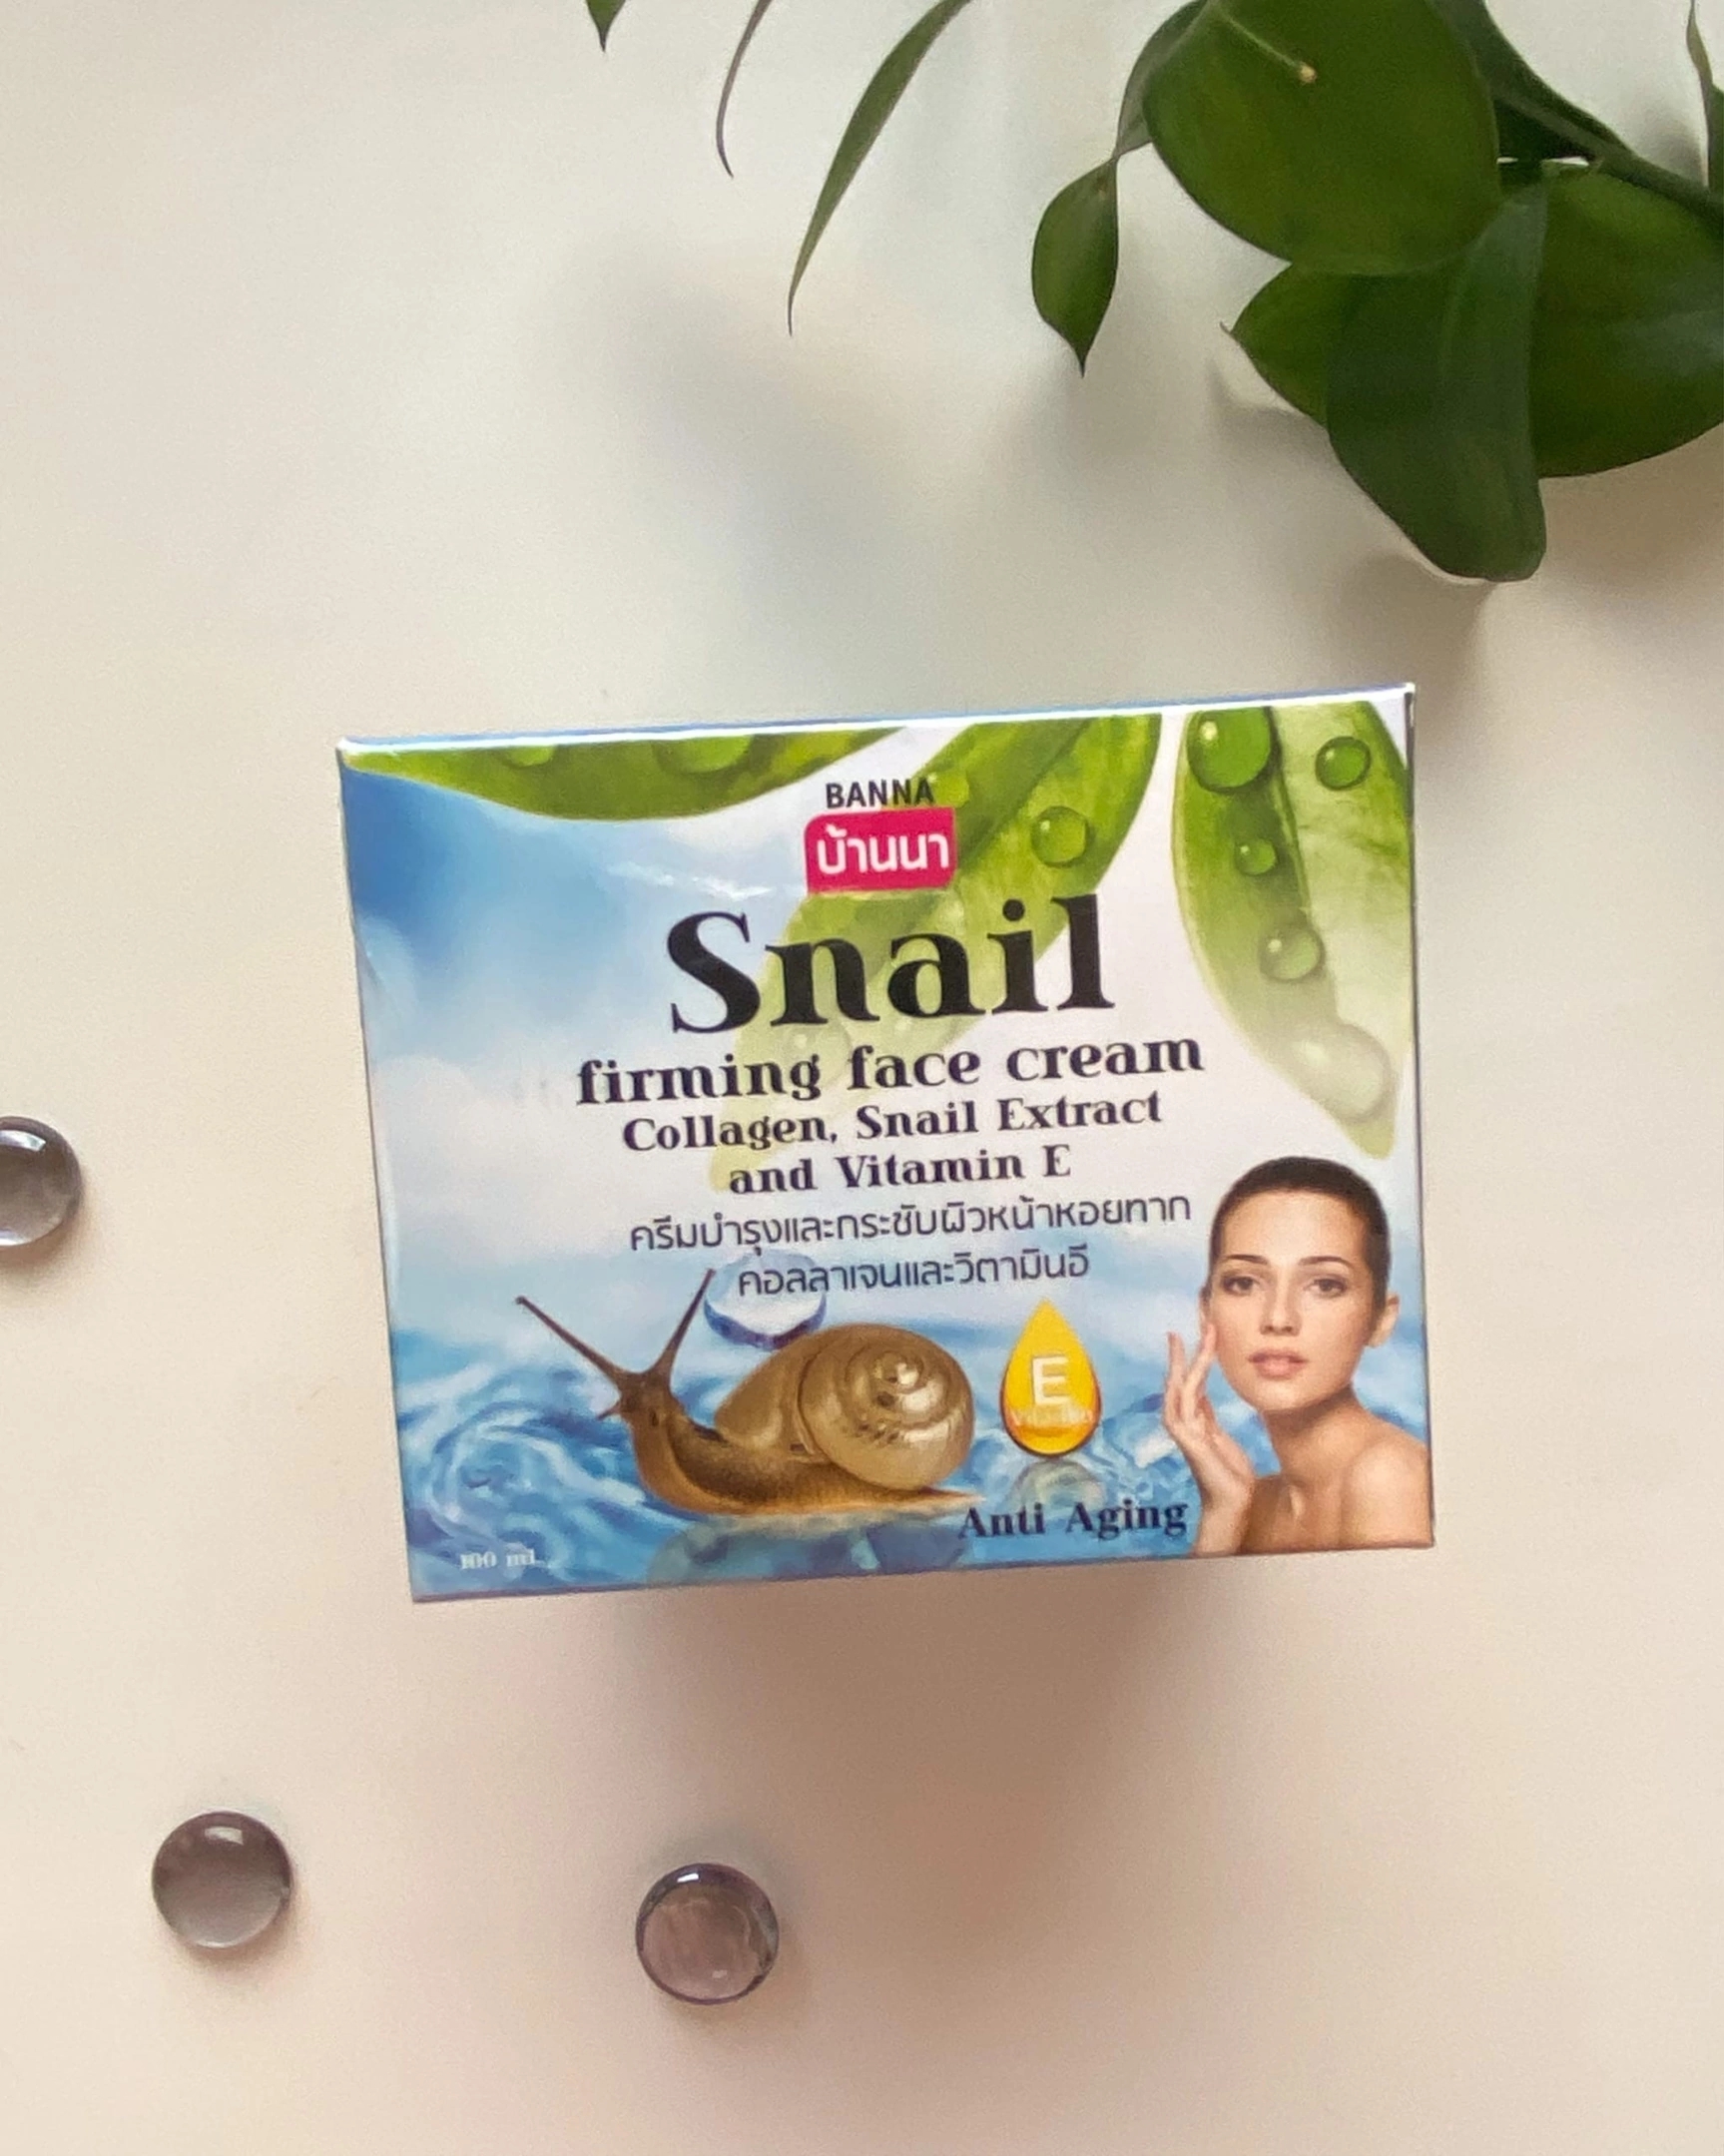 Тайский крем для лица с экстрактом слизи улитки Banna Snail Firming Face Cream Collagen, Snail Extract and Vitamin E 100 мл.